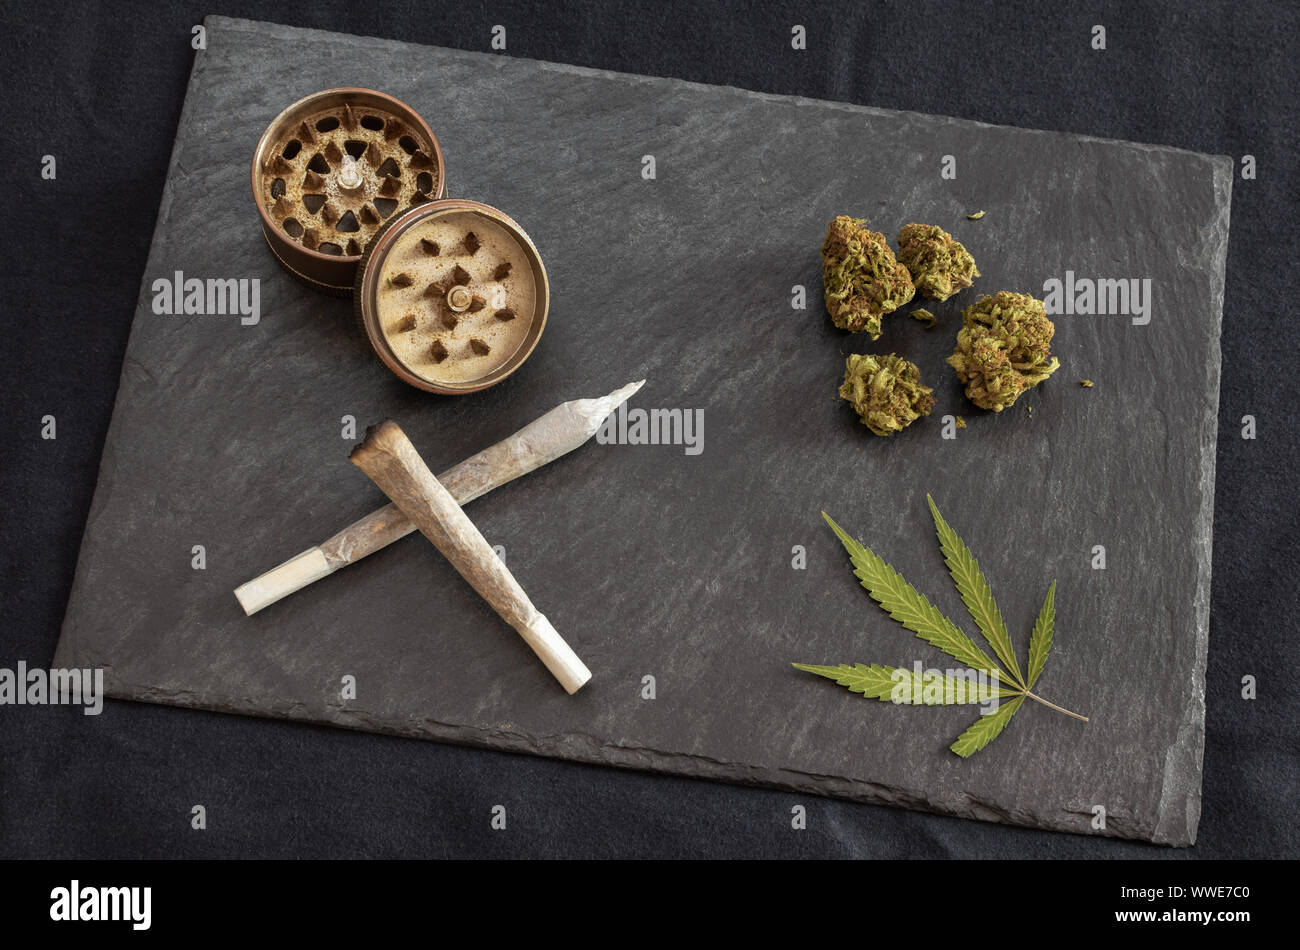 Articulaciones listo para fumar marihuana, cogollos de cannabis de